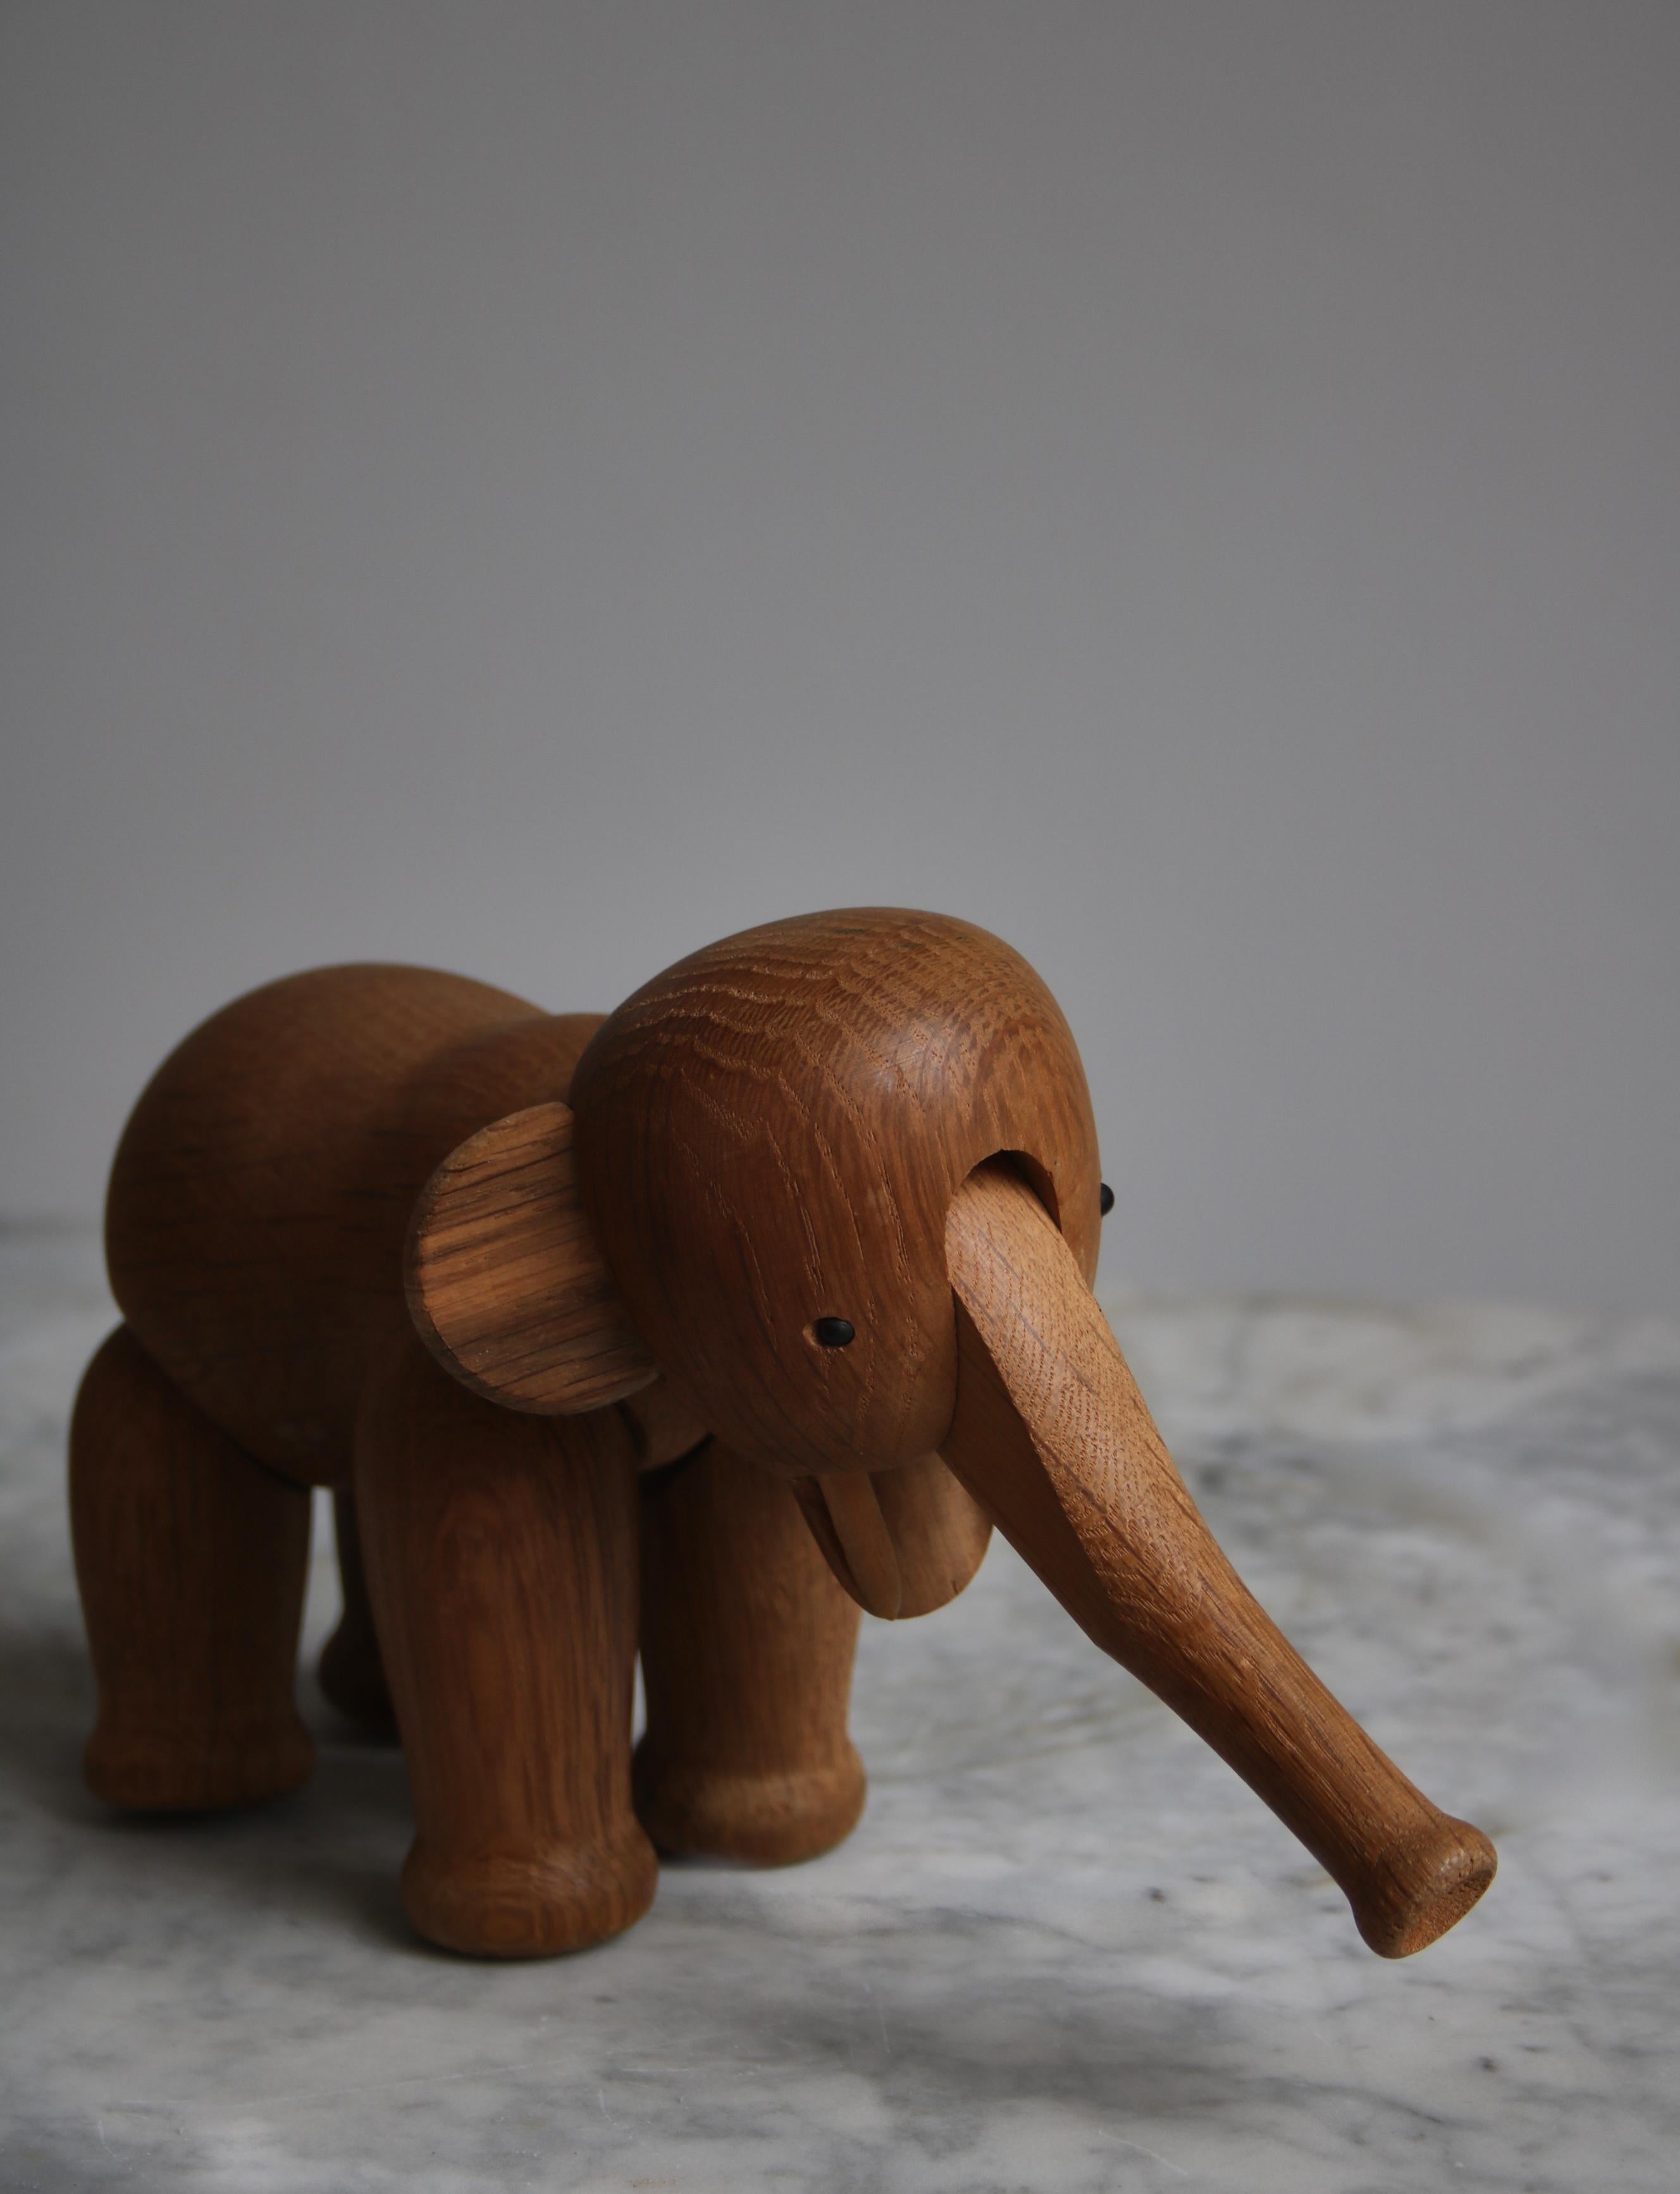 Rare éléphant jouet en bois Kay Bojesen du début des années 1950 en chêne patiné avec un grain étonnant. L'éléphant a été créé en 1953 par Kaye et fabriqué dès le départ à la main dans son petit atelier de Copenhague, au Danemark. Le cachet apposé